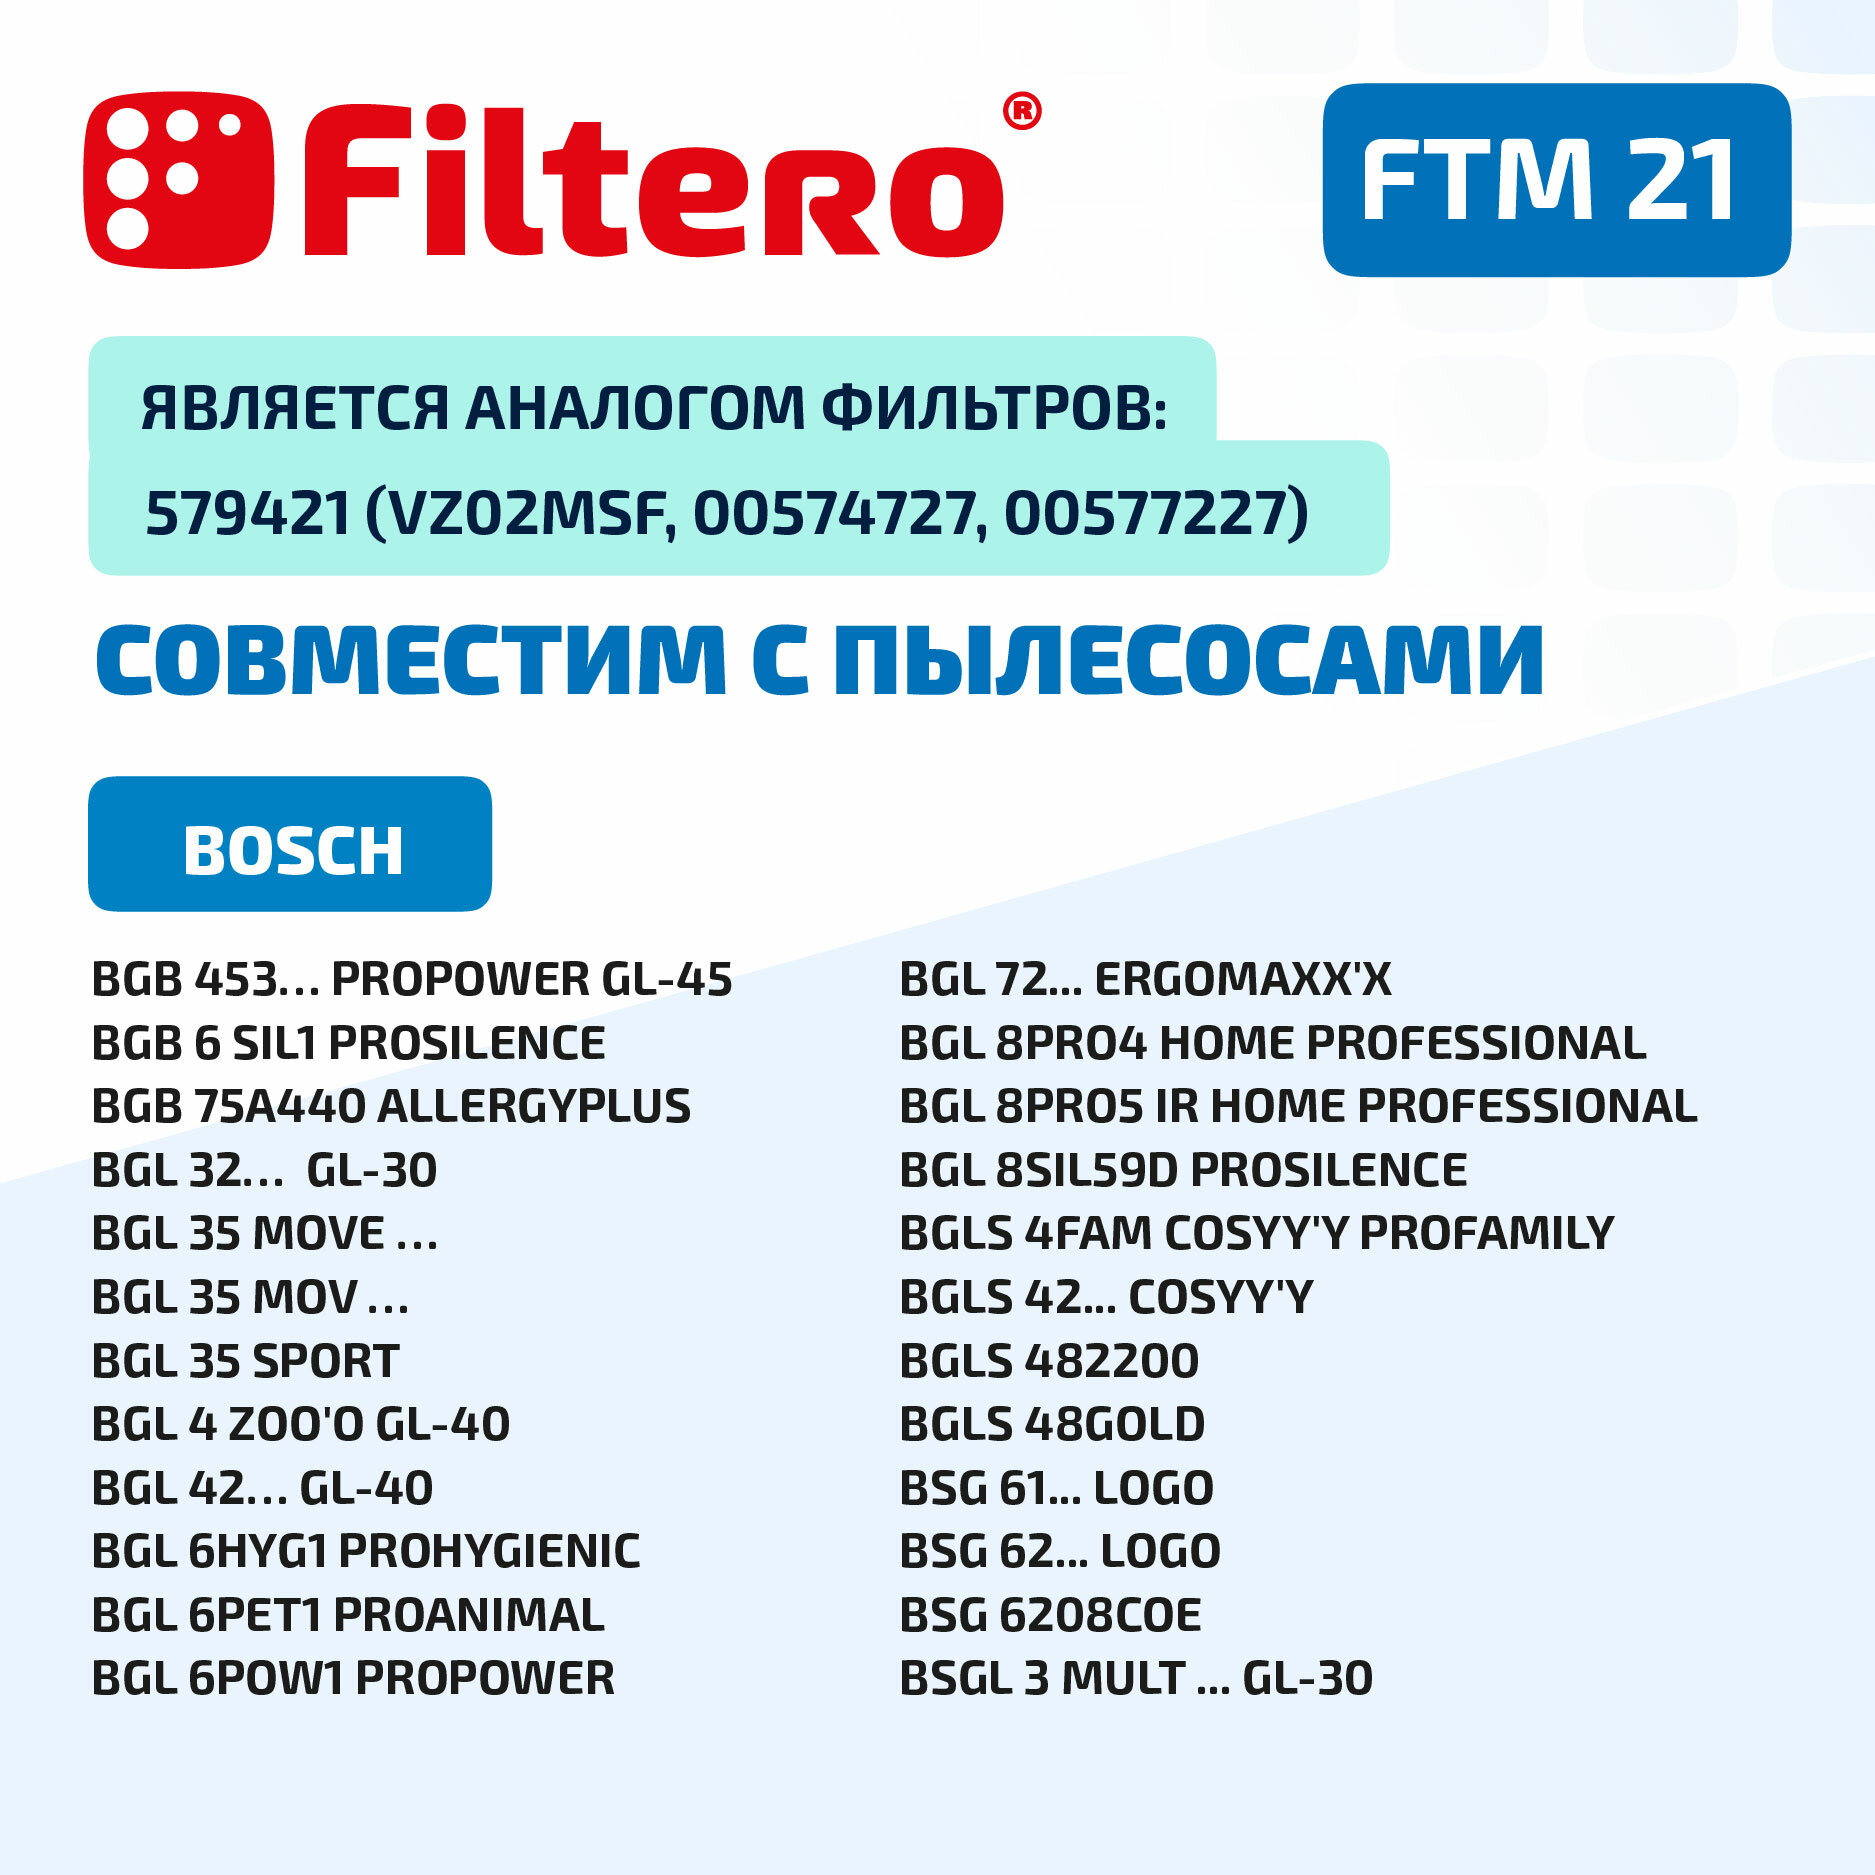 Моторный фильтр Filtero FTM 21 для пылесосов Bosch